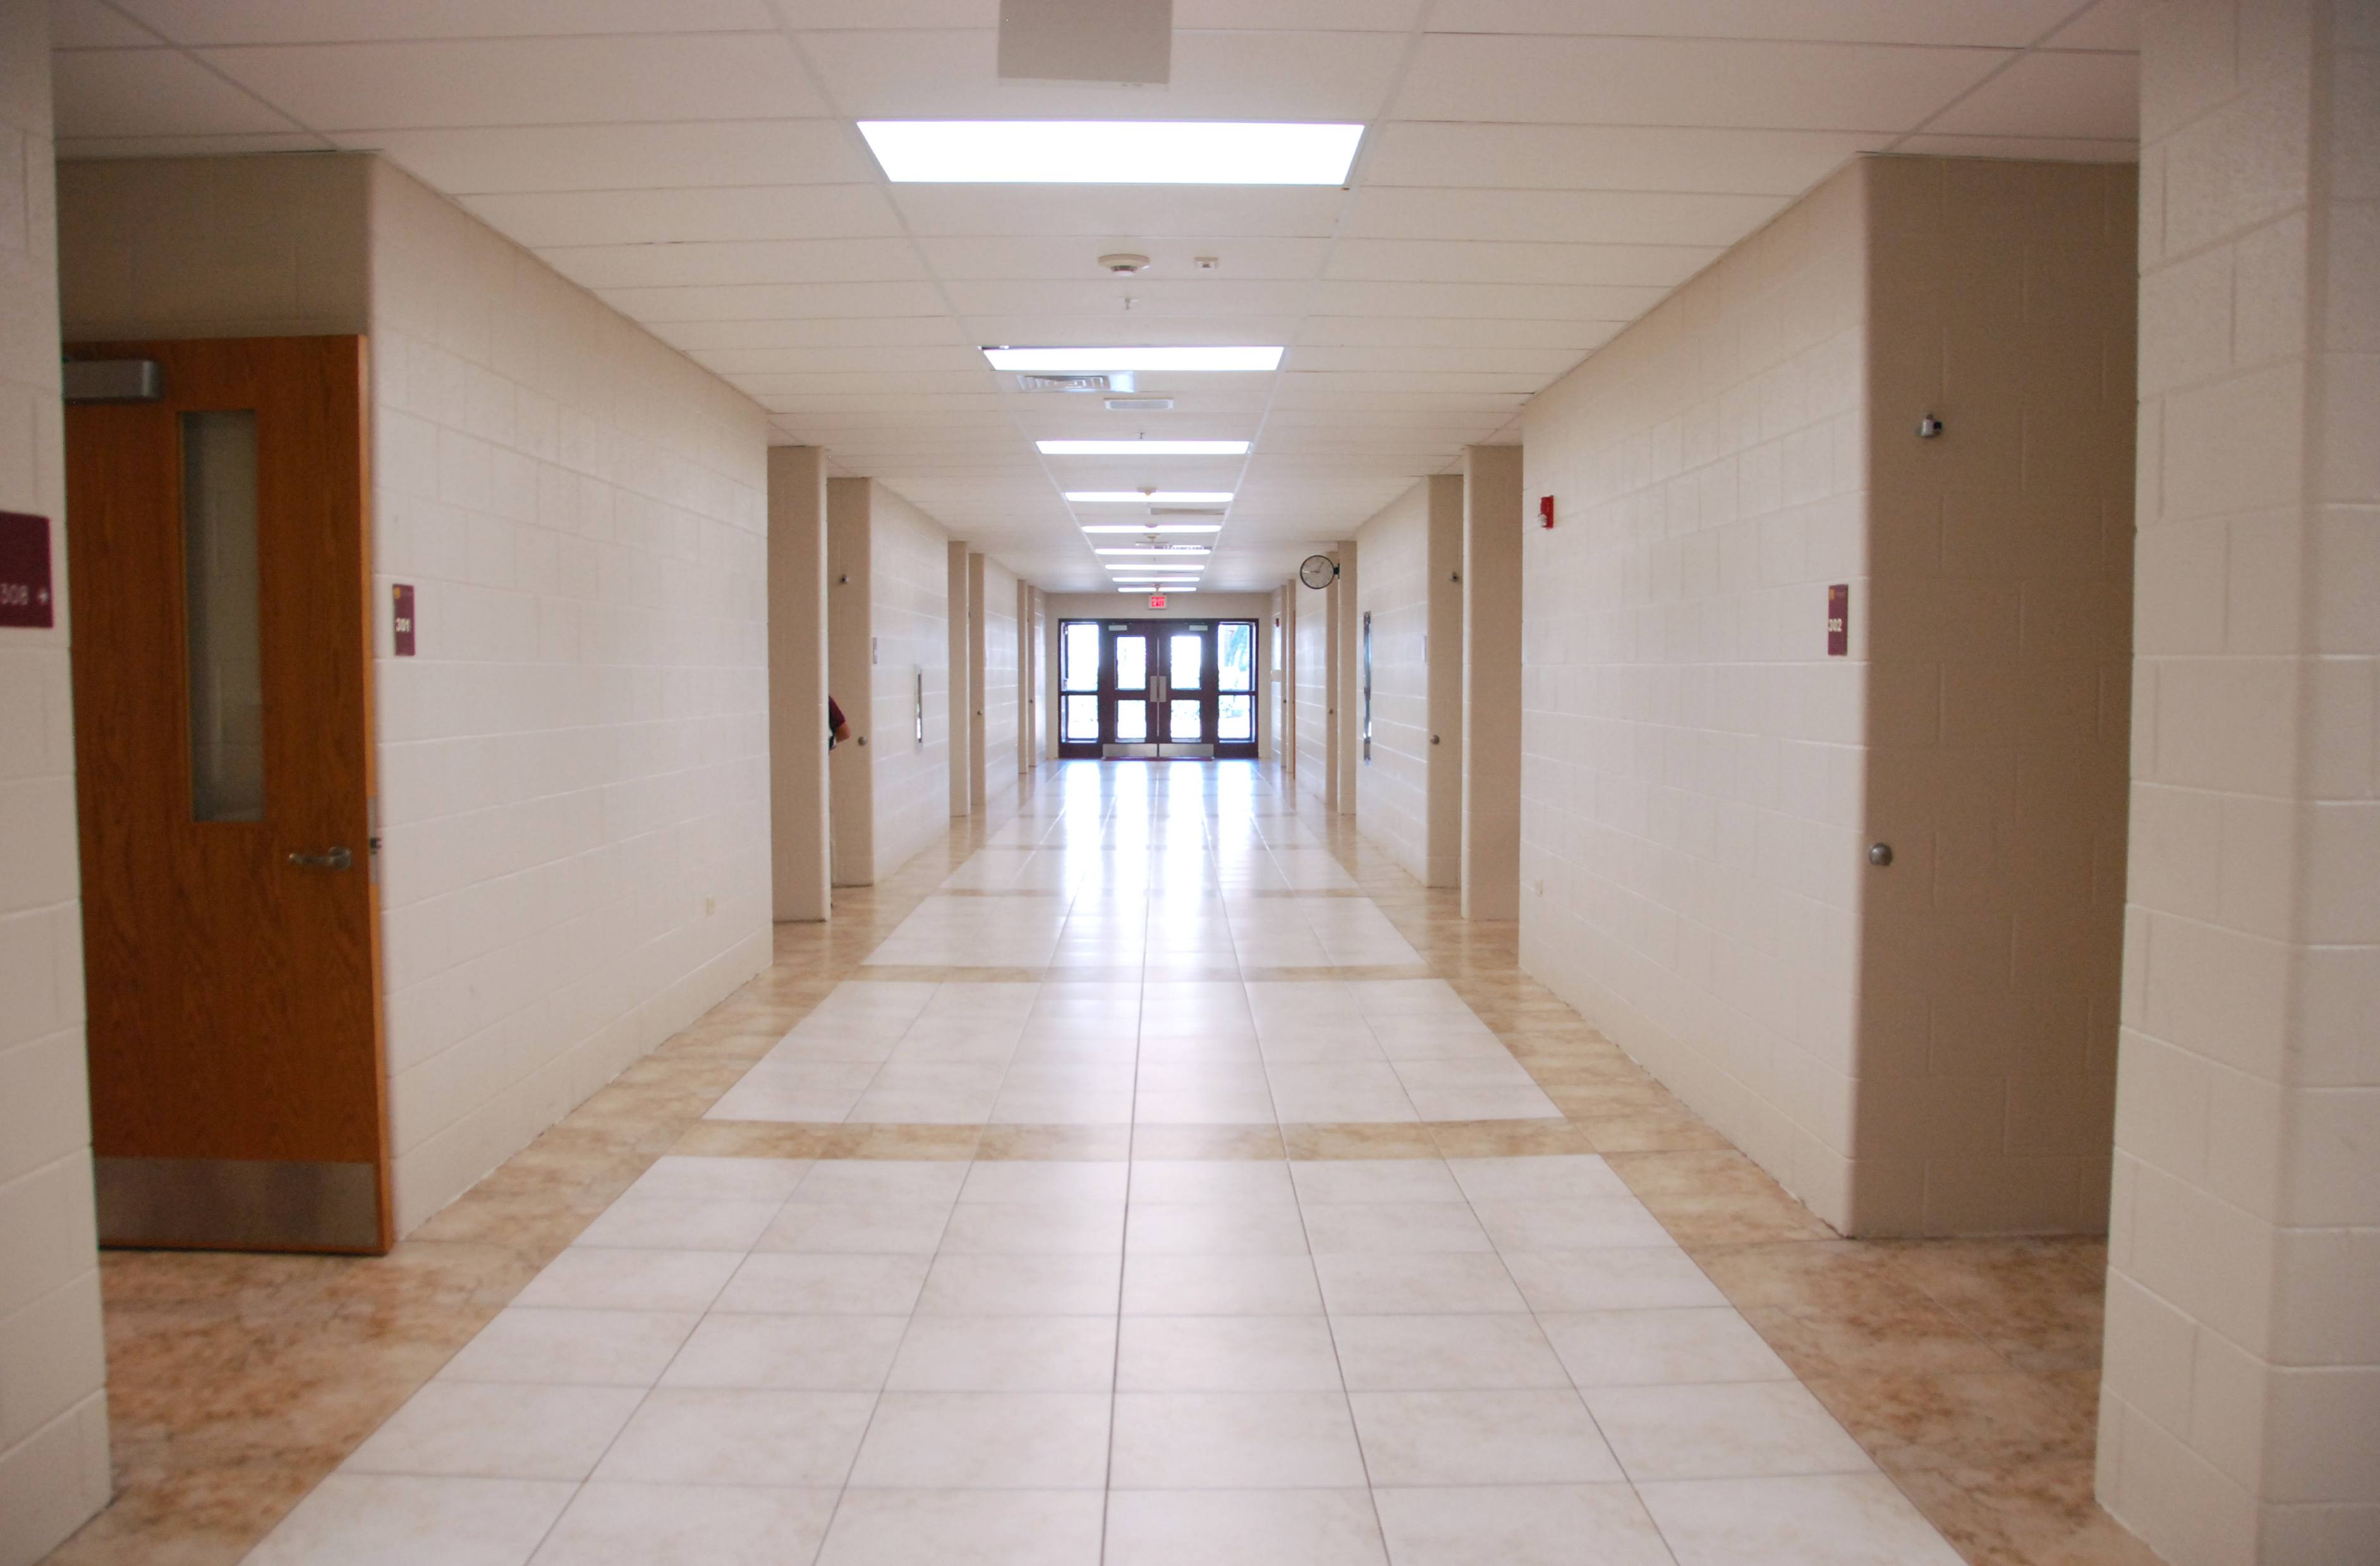 Corridor in English